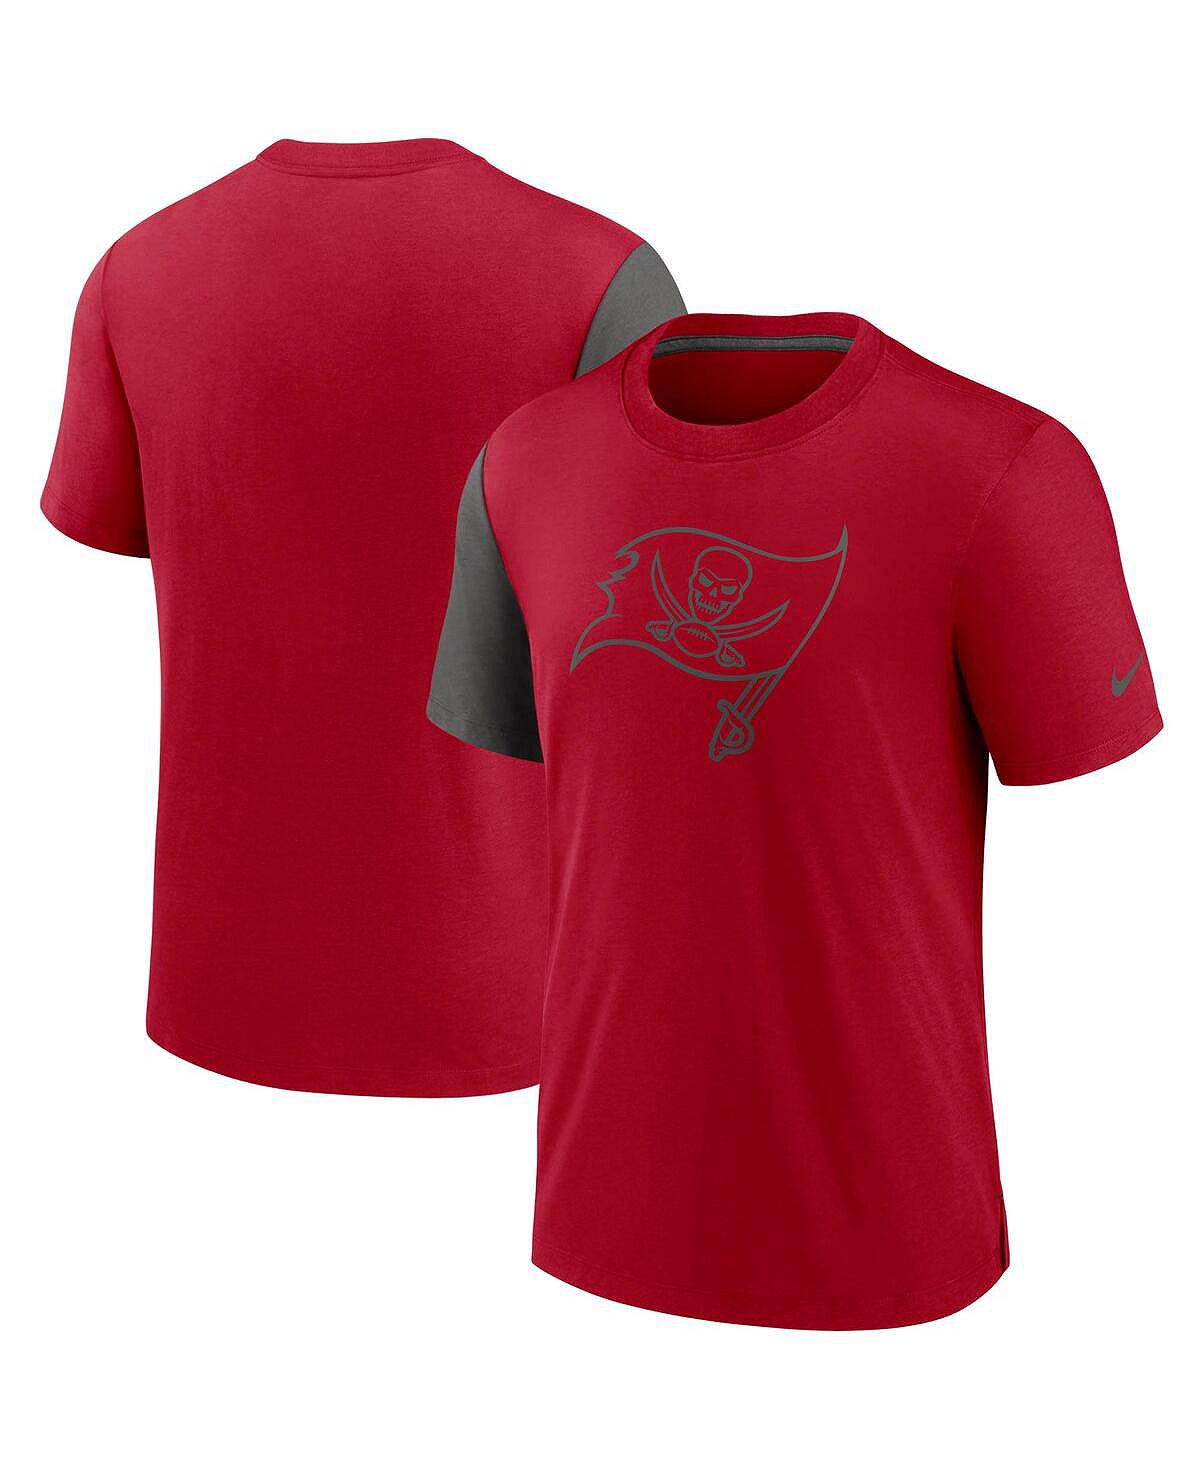 цена Мужская красная, оловянная футболка tampa bay buccaneers pop performance Nike, мульти